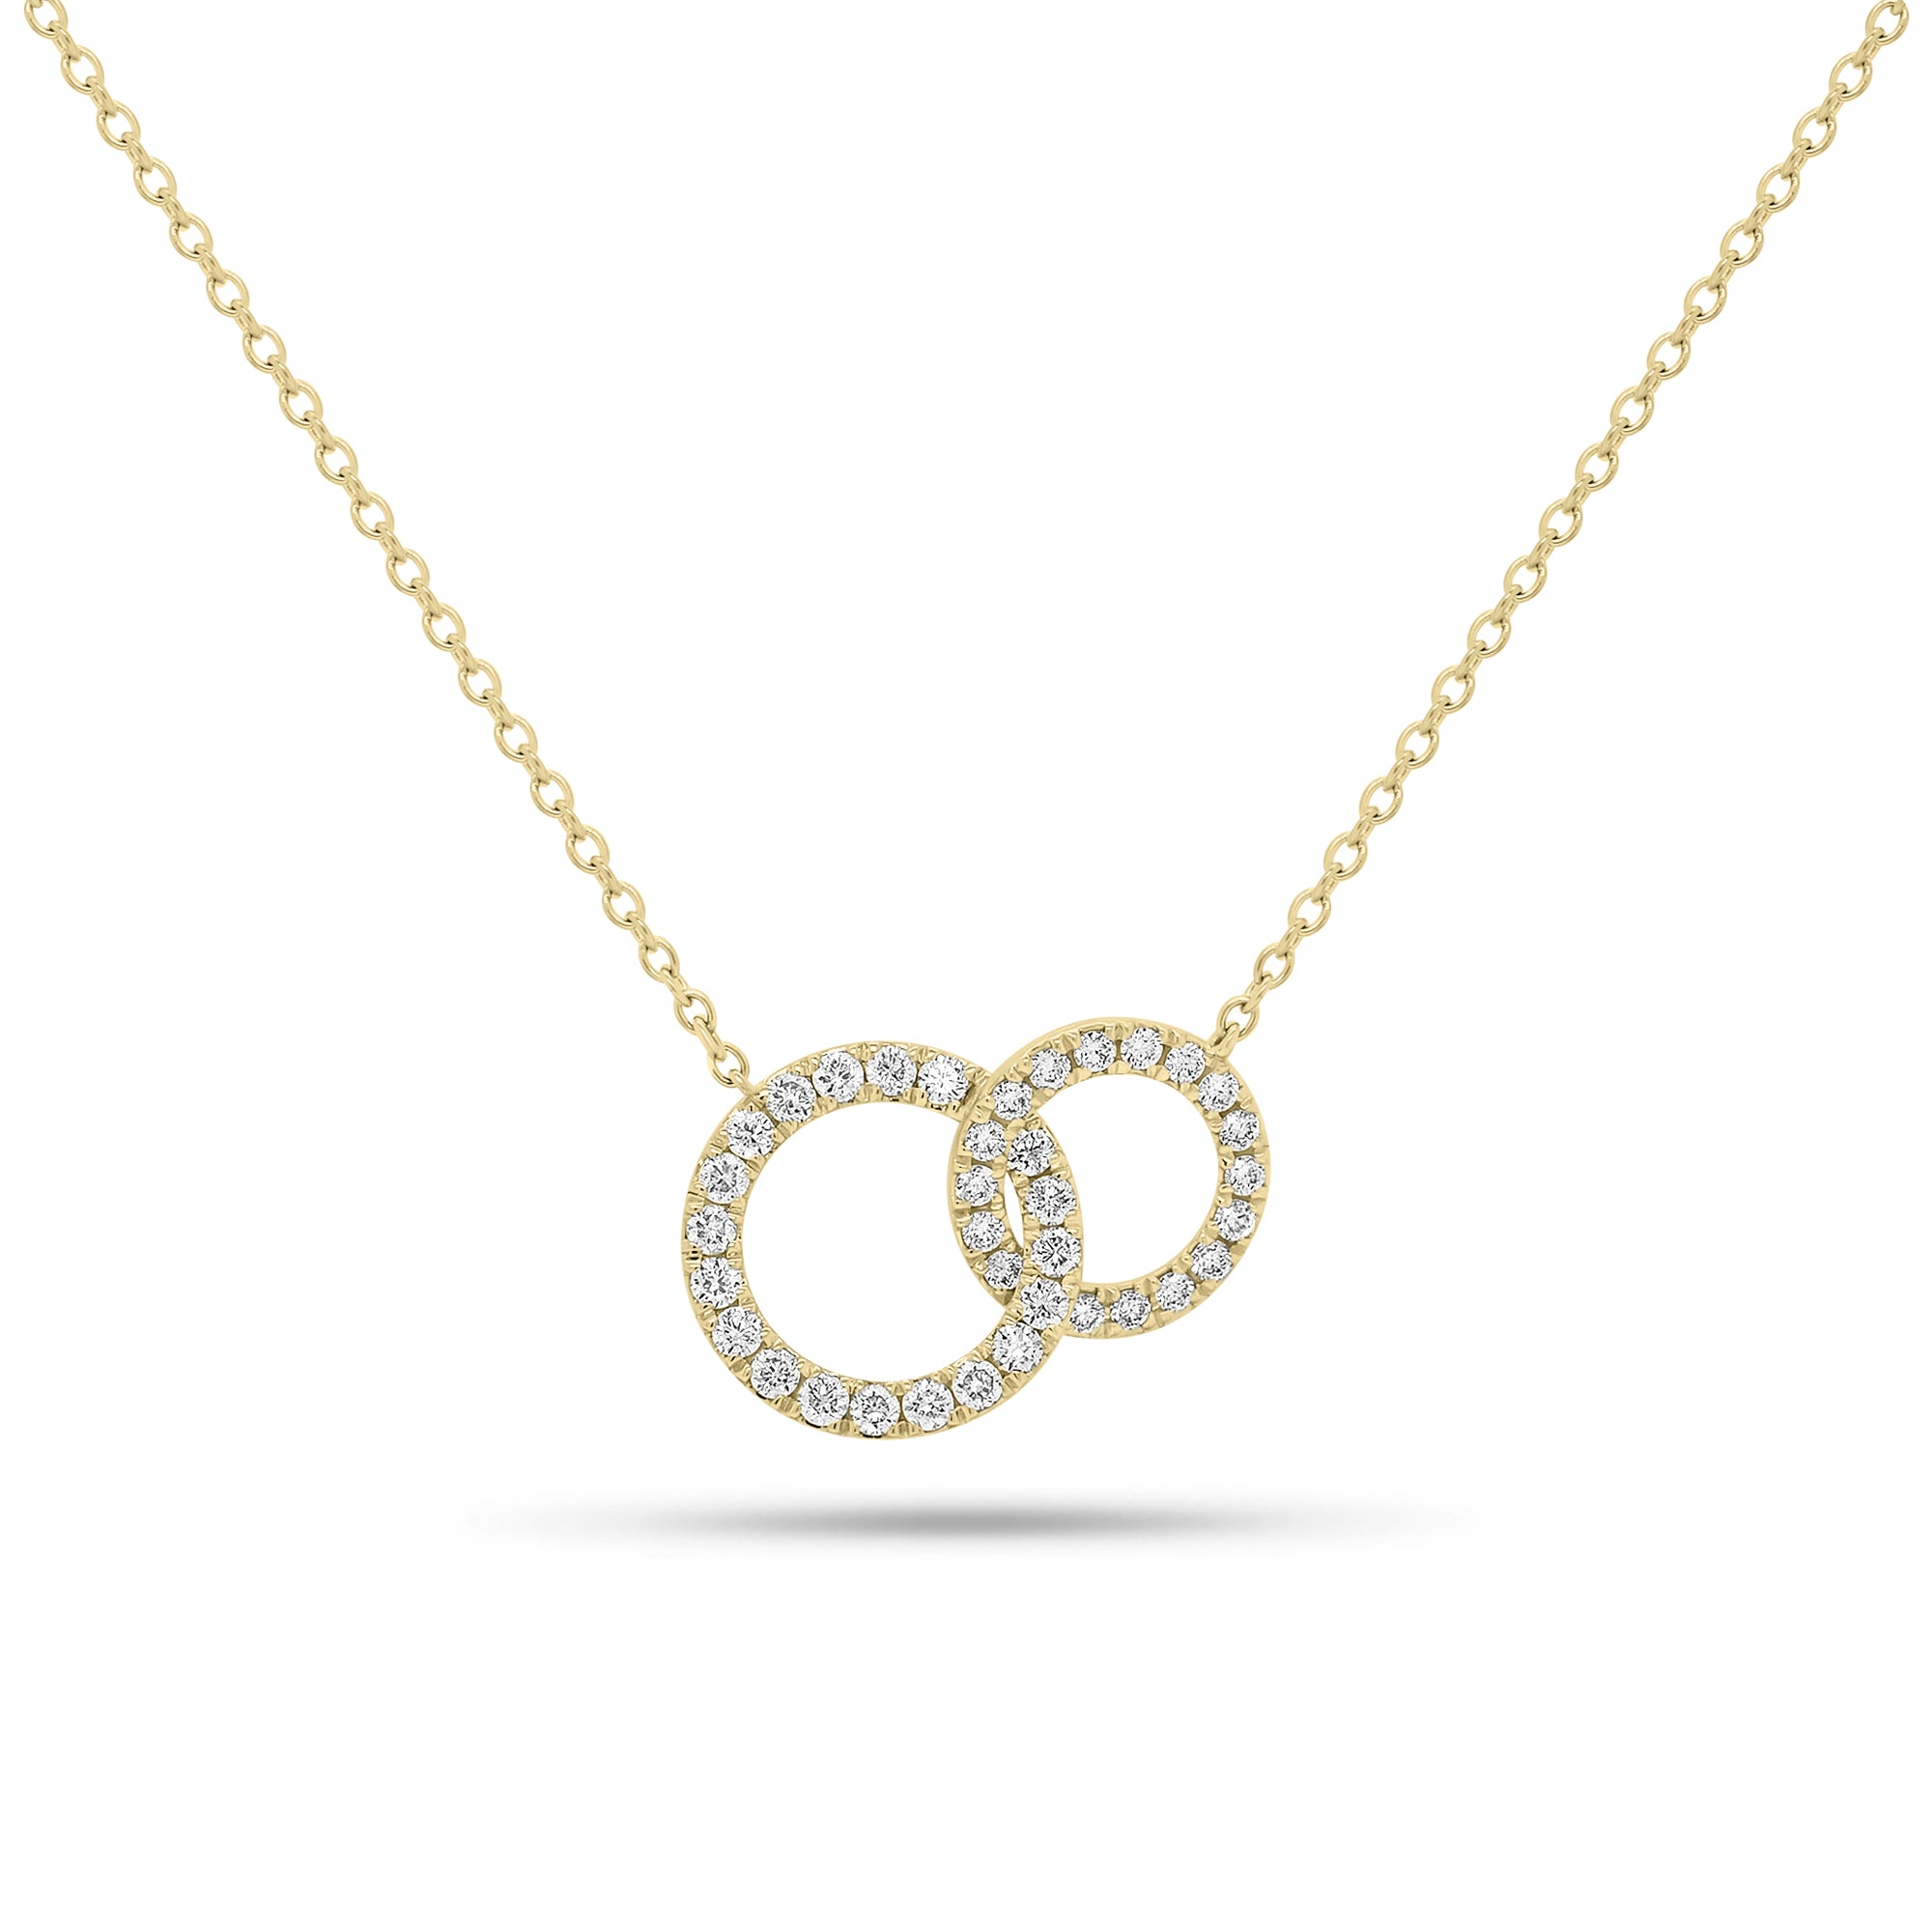 Diamond Interlocking Circles Necklace - 18K gold weighing 2.86 grams  - 37 round diamonds weighing 0.42 carats